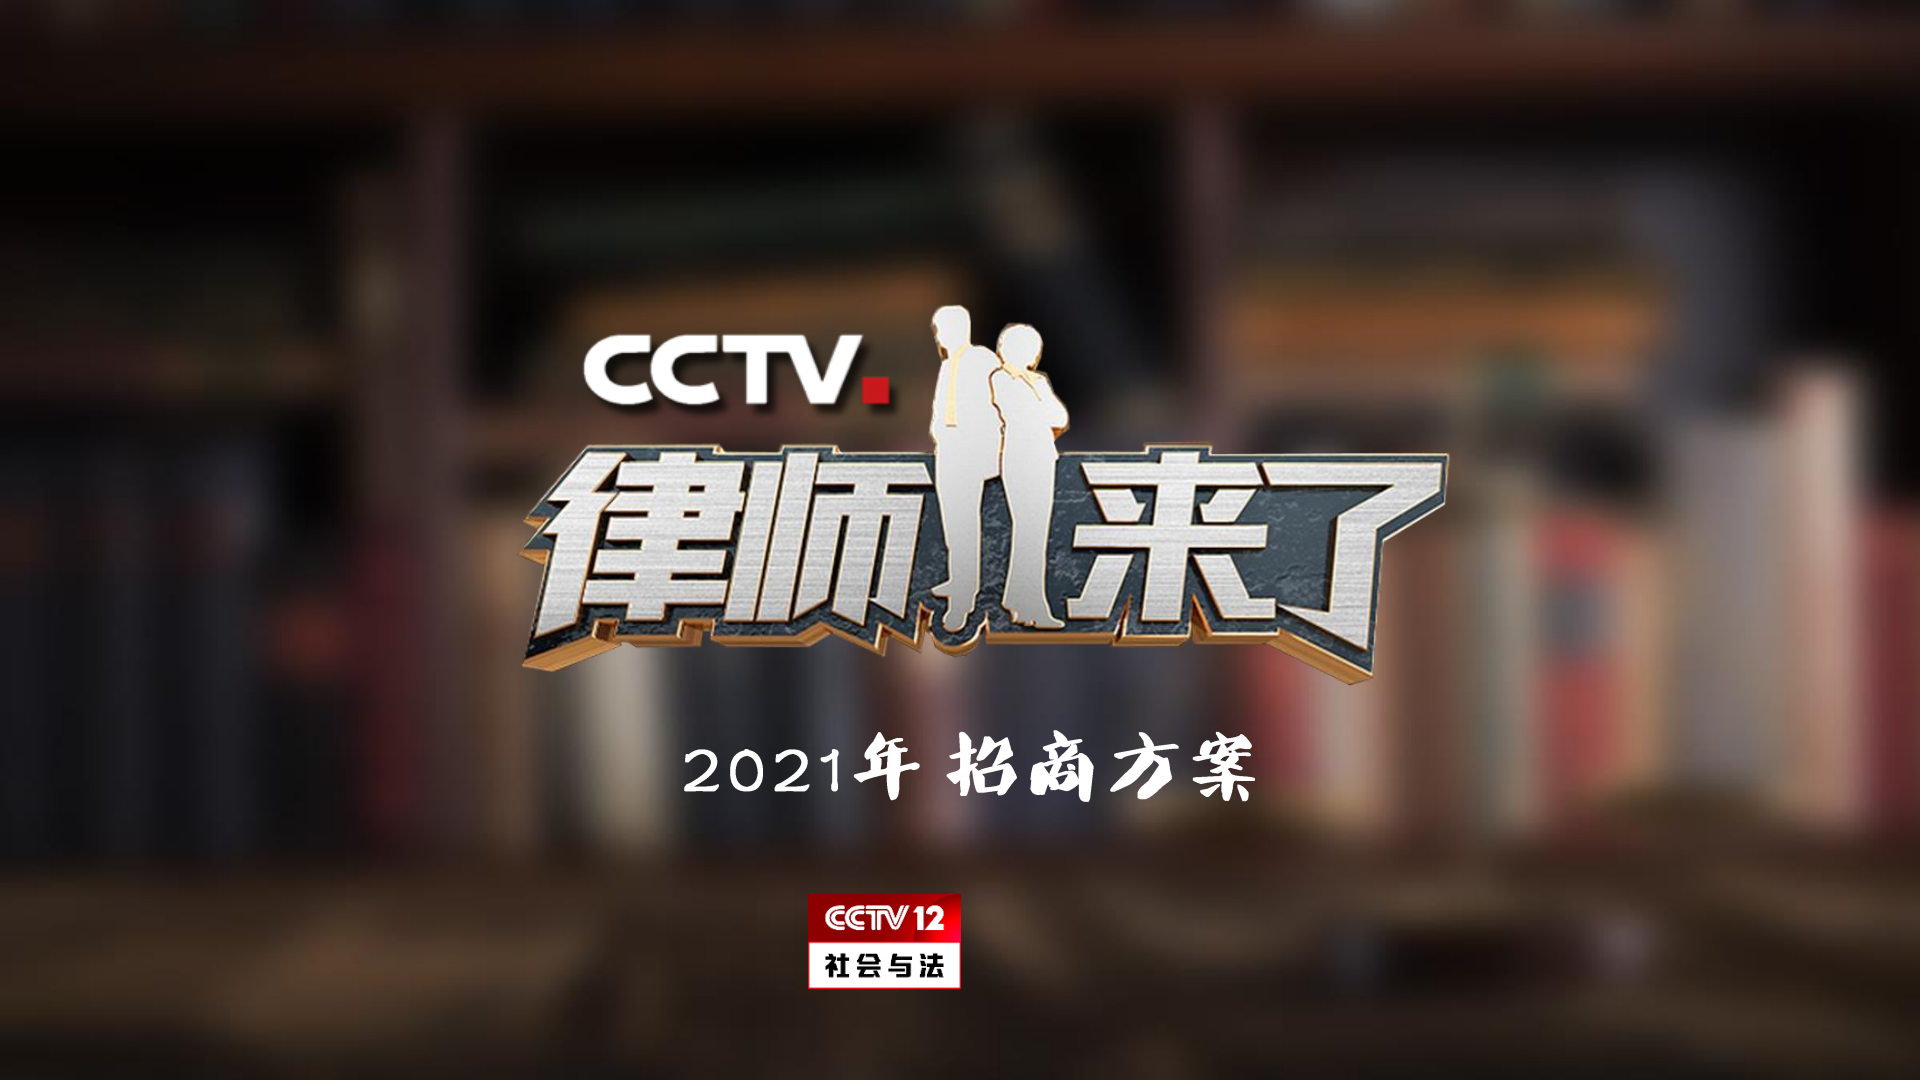 2021年CCTV-12《律师来了》招商方案